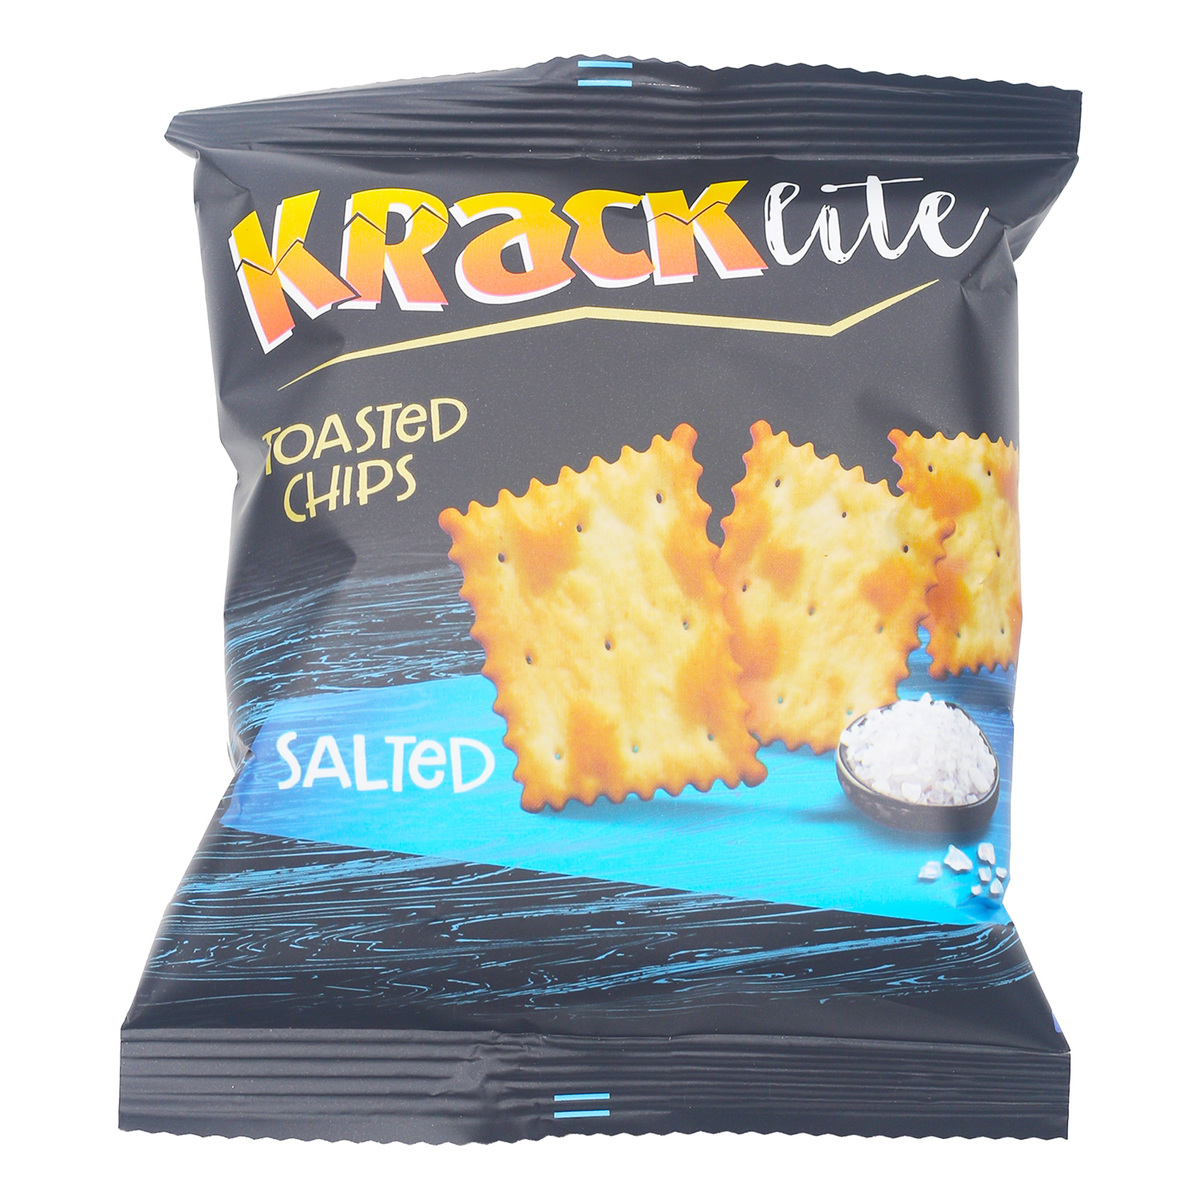 Kracklite Salted Toasted Chips 10 x 26 g